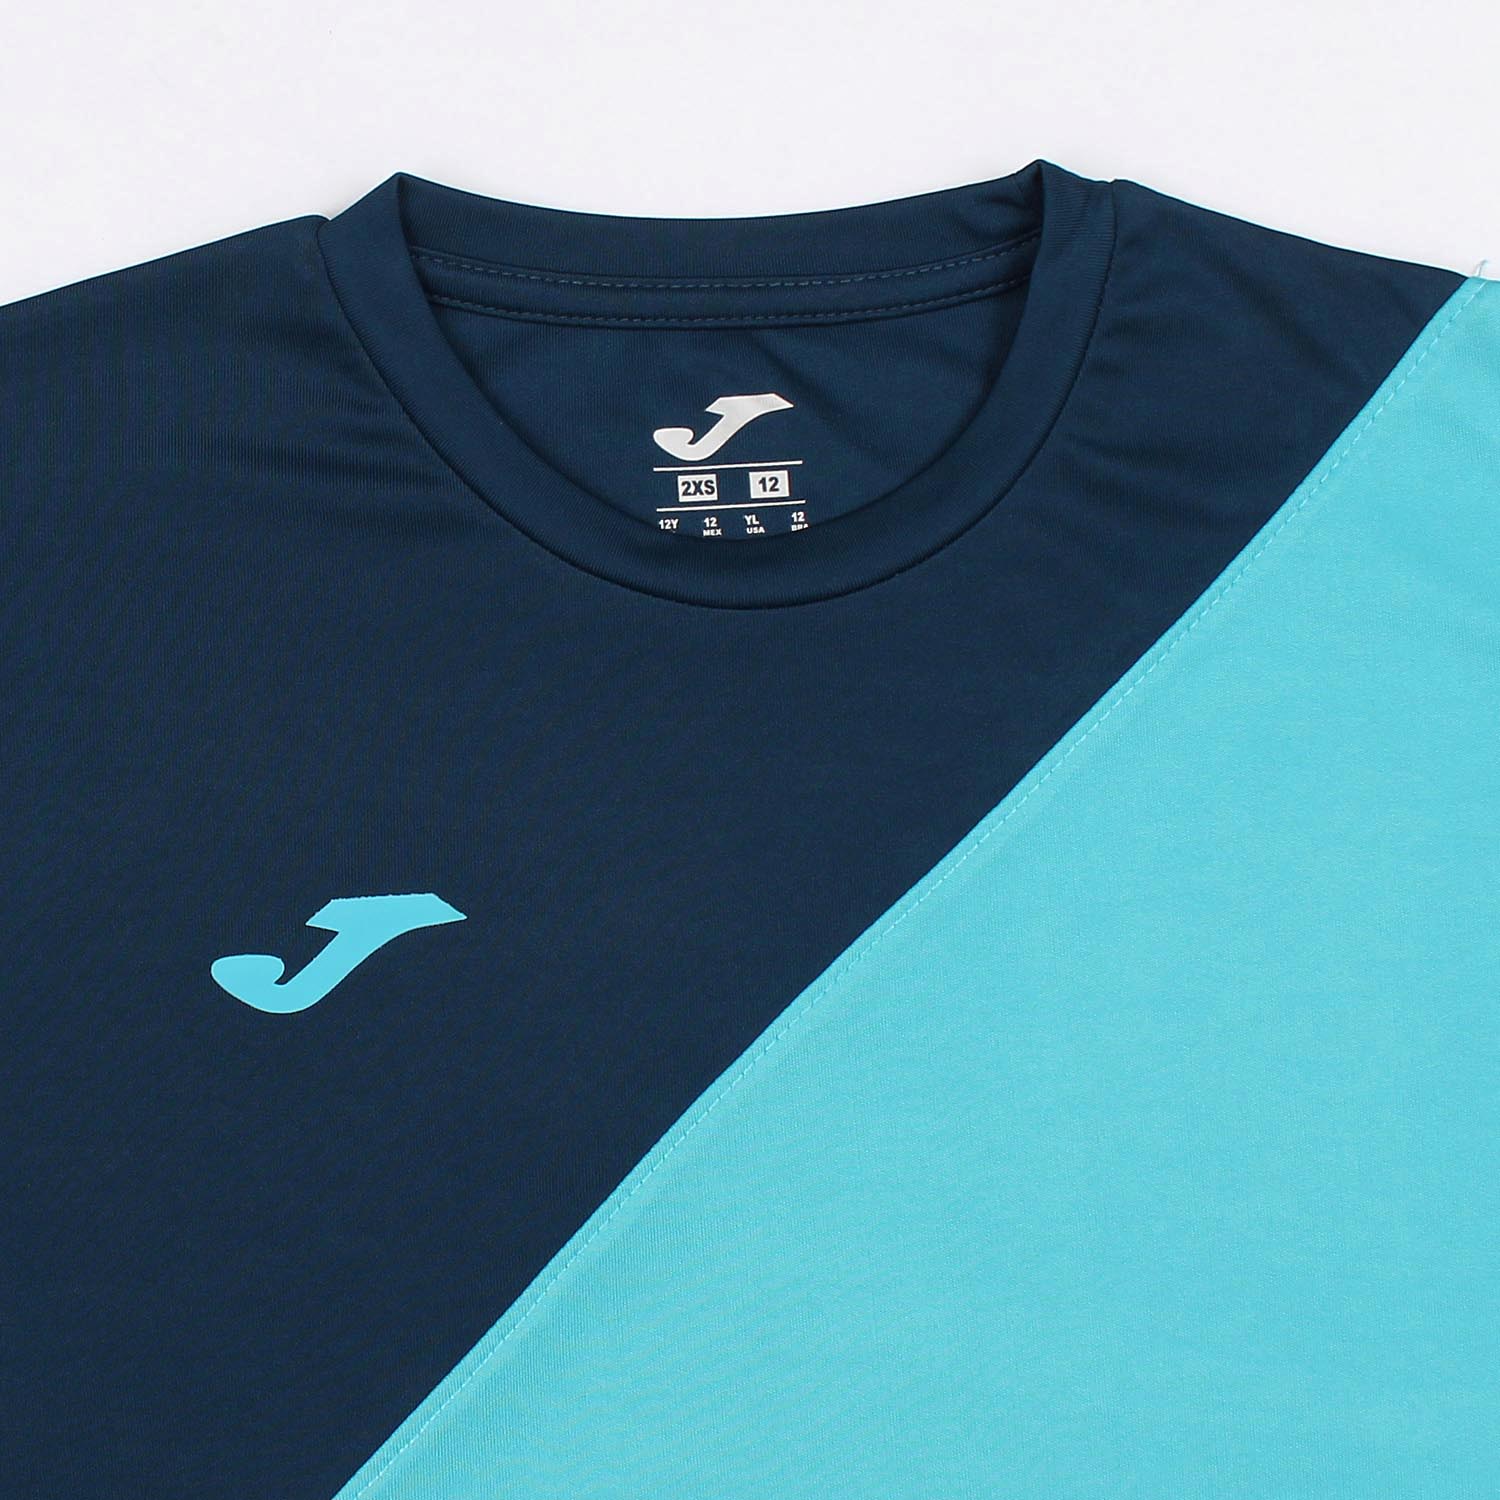 Joma Cross Panel Polyester T-shirt For Boys-KTST-2195Navy Turquoise White